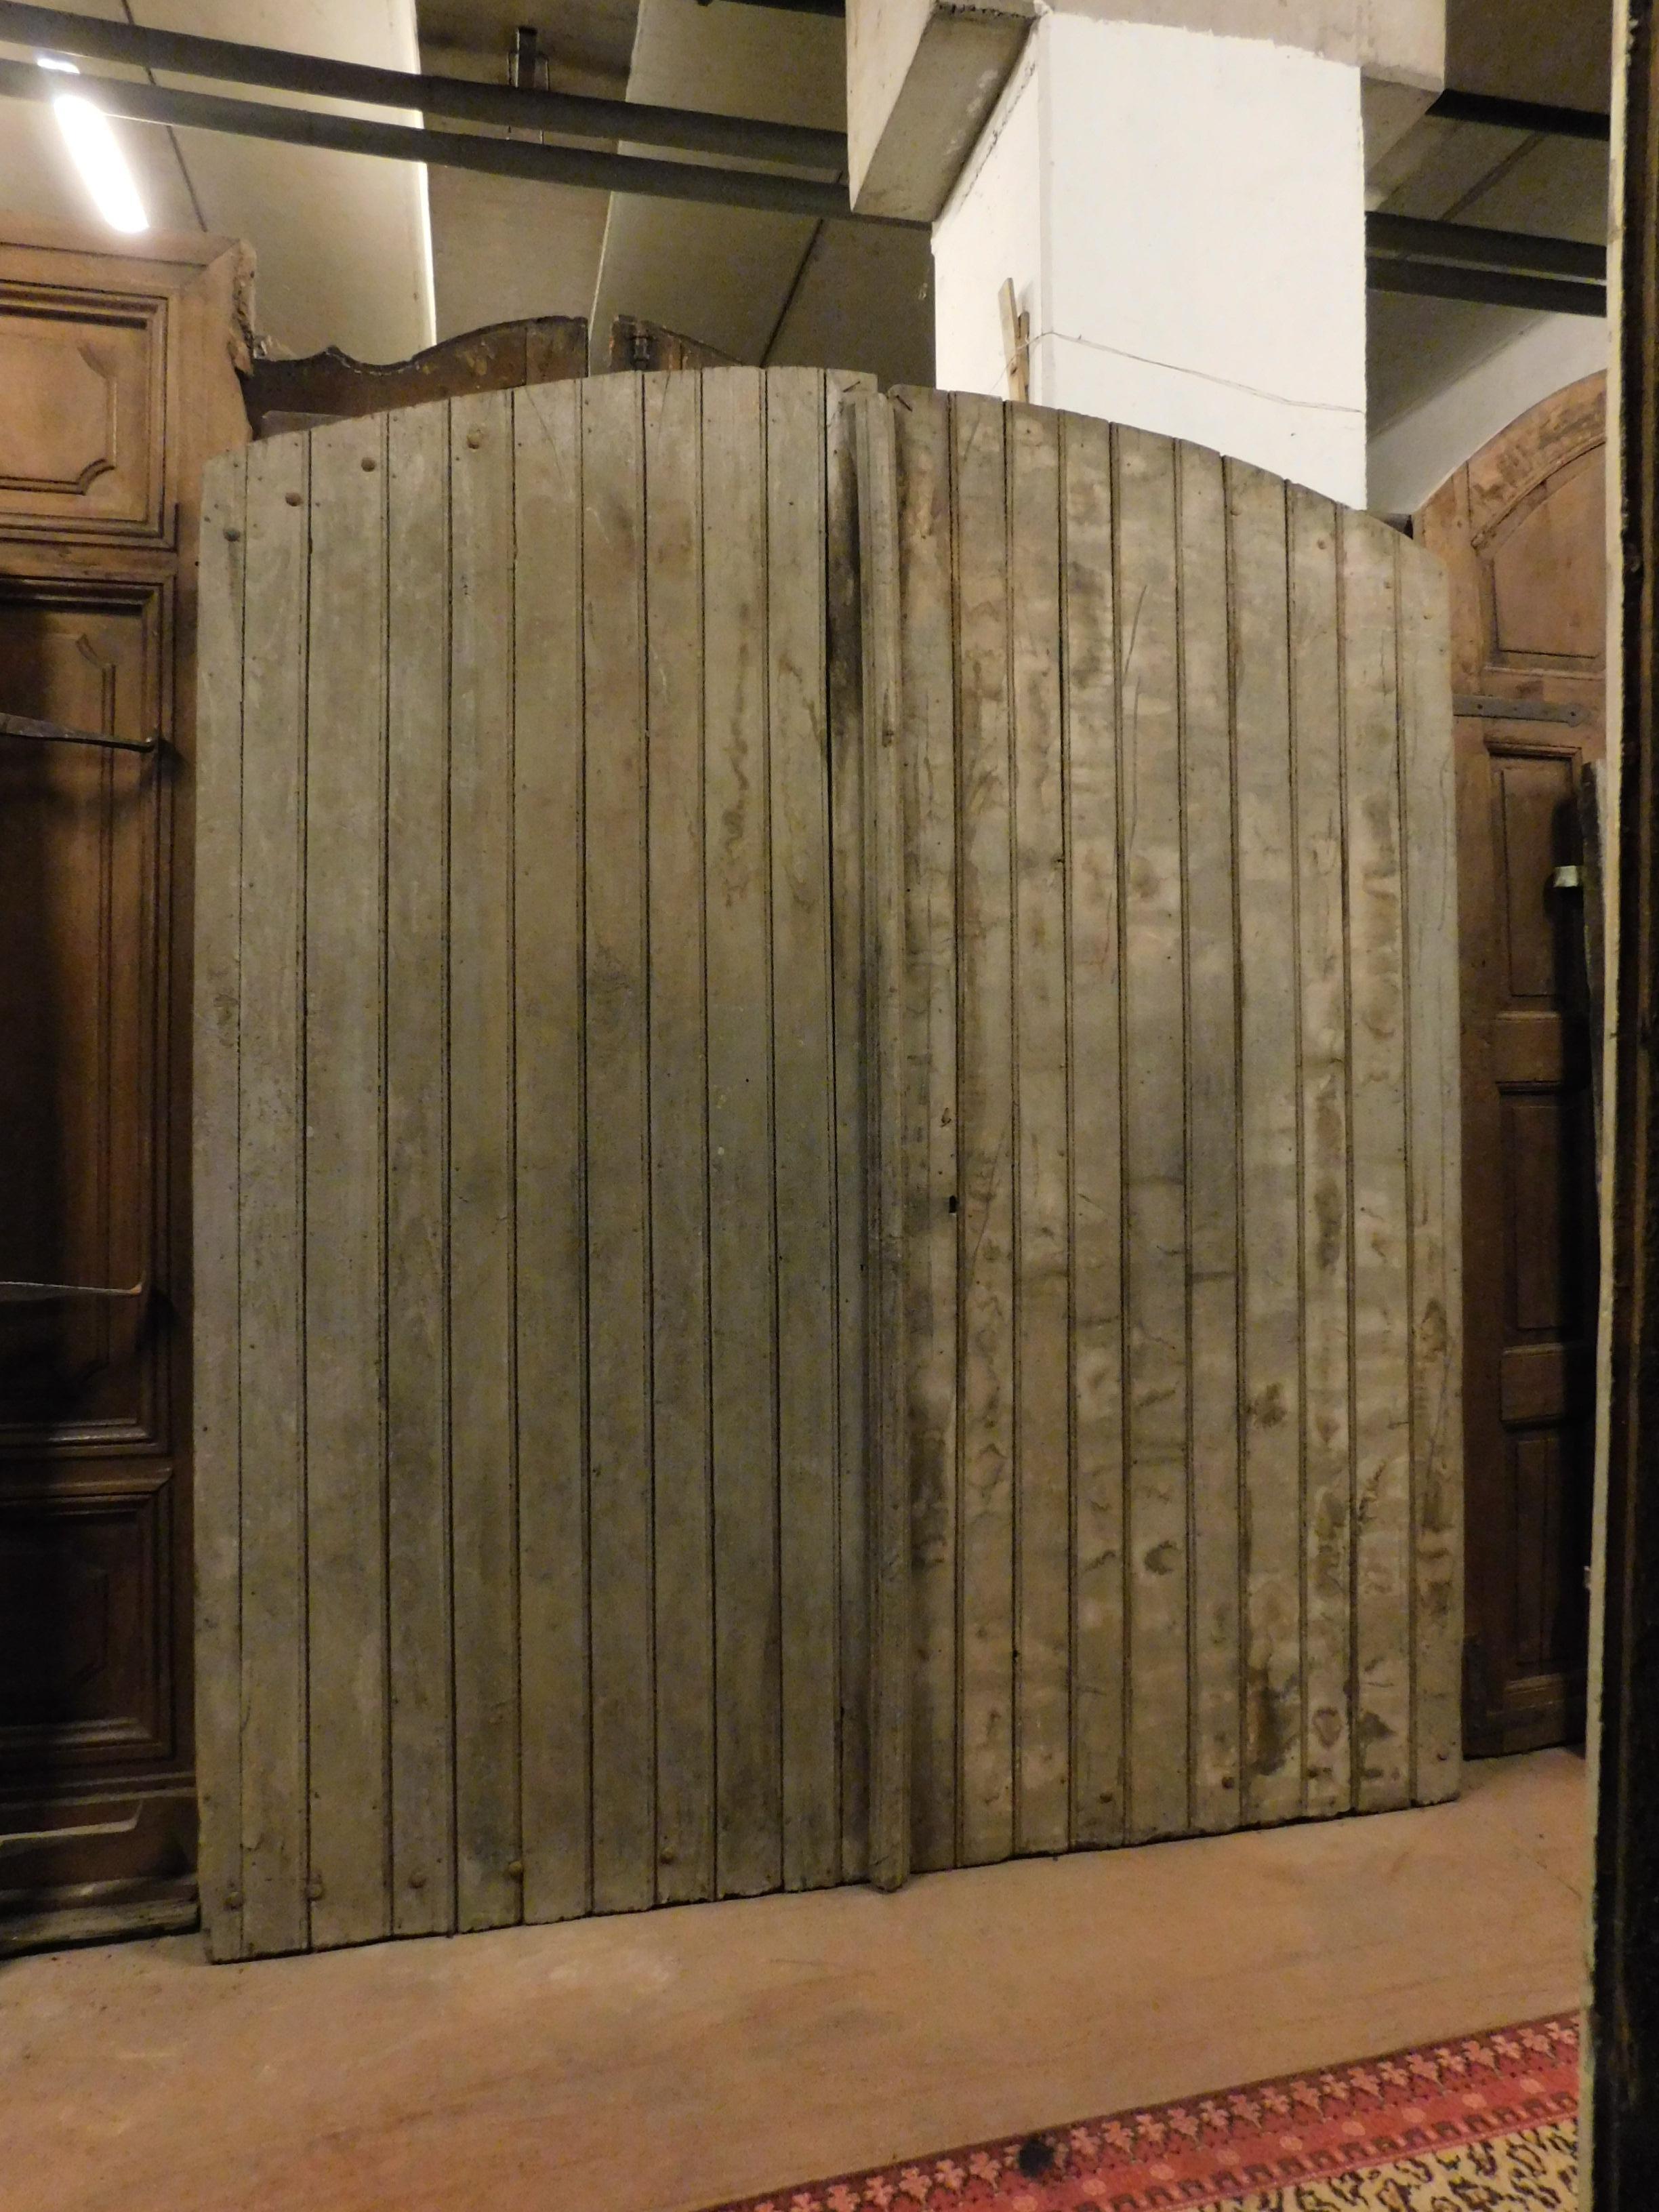 Ancienne porte d'entrée, porte principale, fabriquée à la main en bois mixte, de forme nervurée, patinée par le temps, construite à la fin du XIXe siècle pour une ferme rustique du nord de l'Italie (Piémont). Le dos est également fini et les